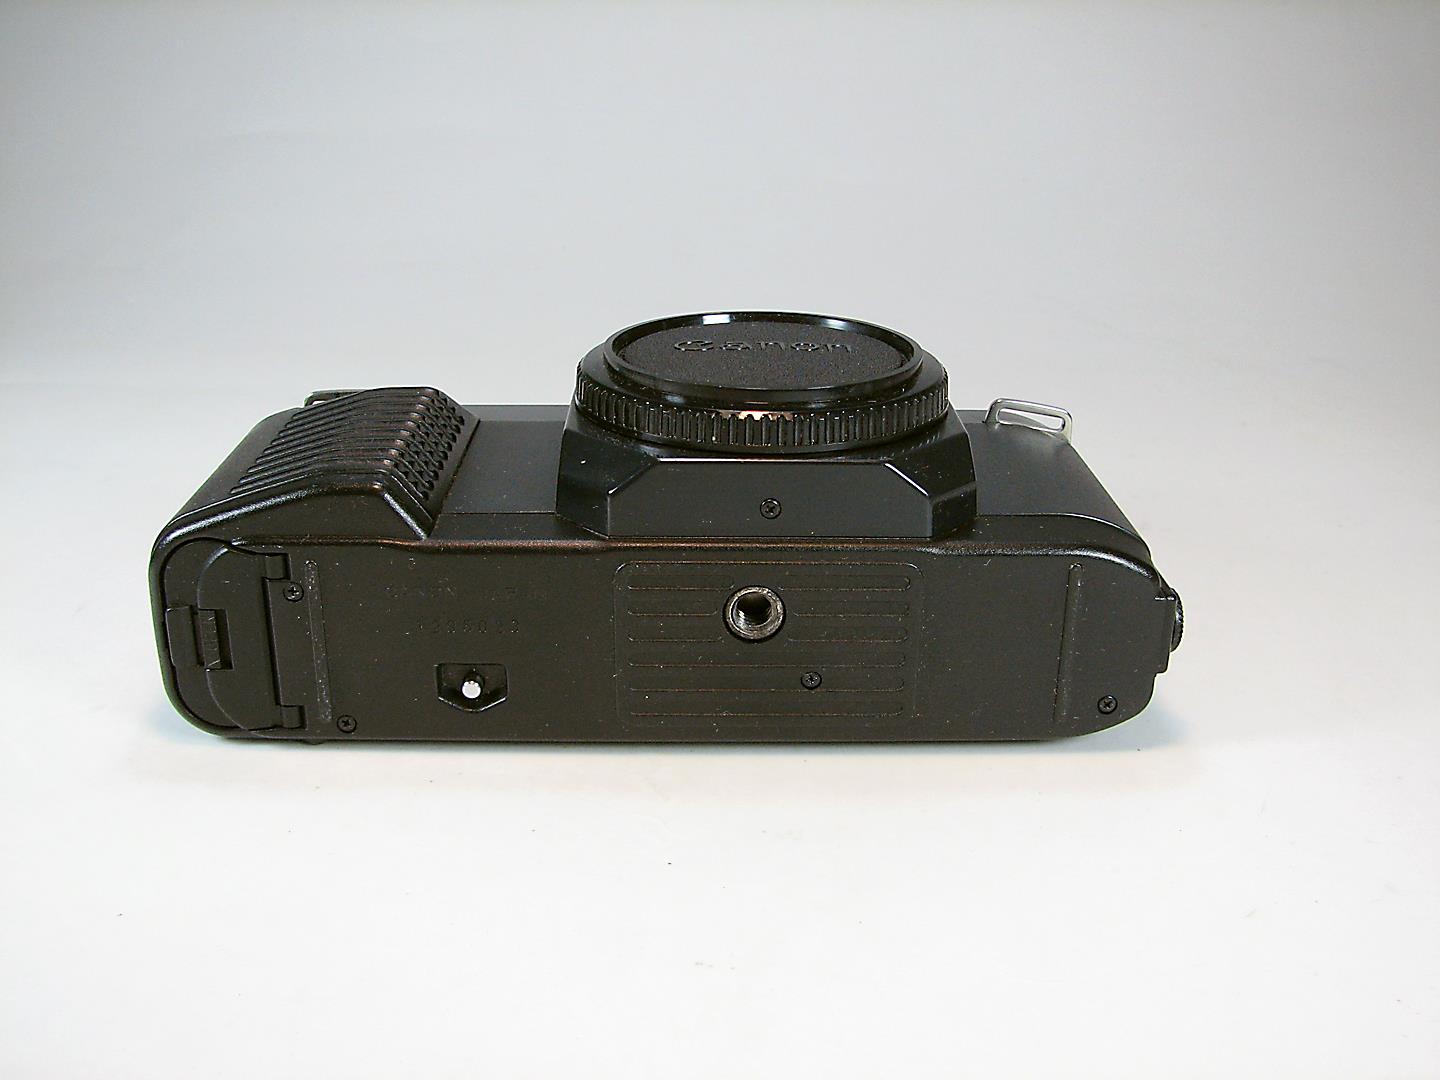 دوربین Canon T50 و فلاش و کیف با کارتن